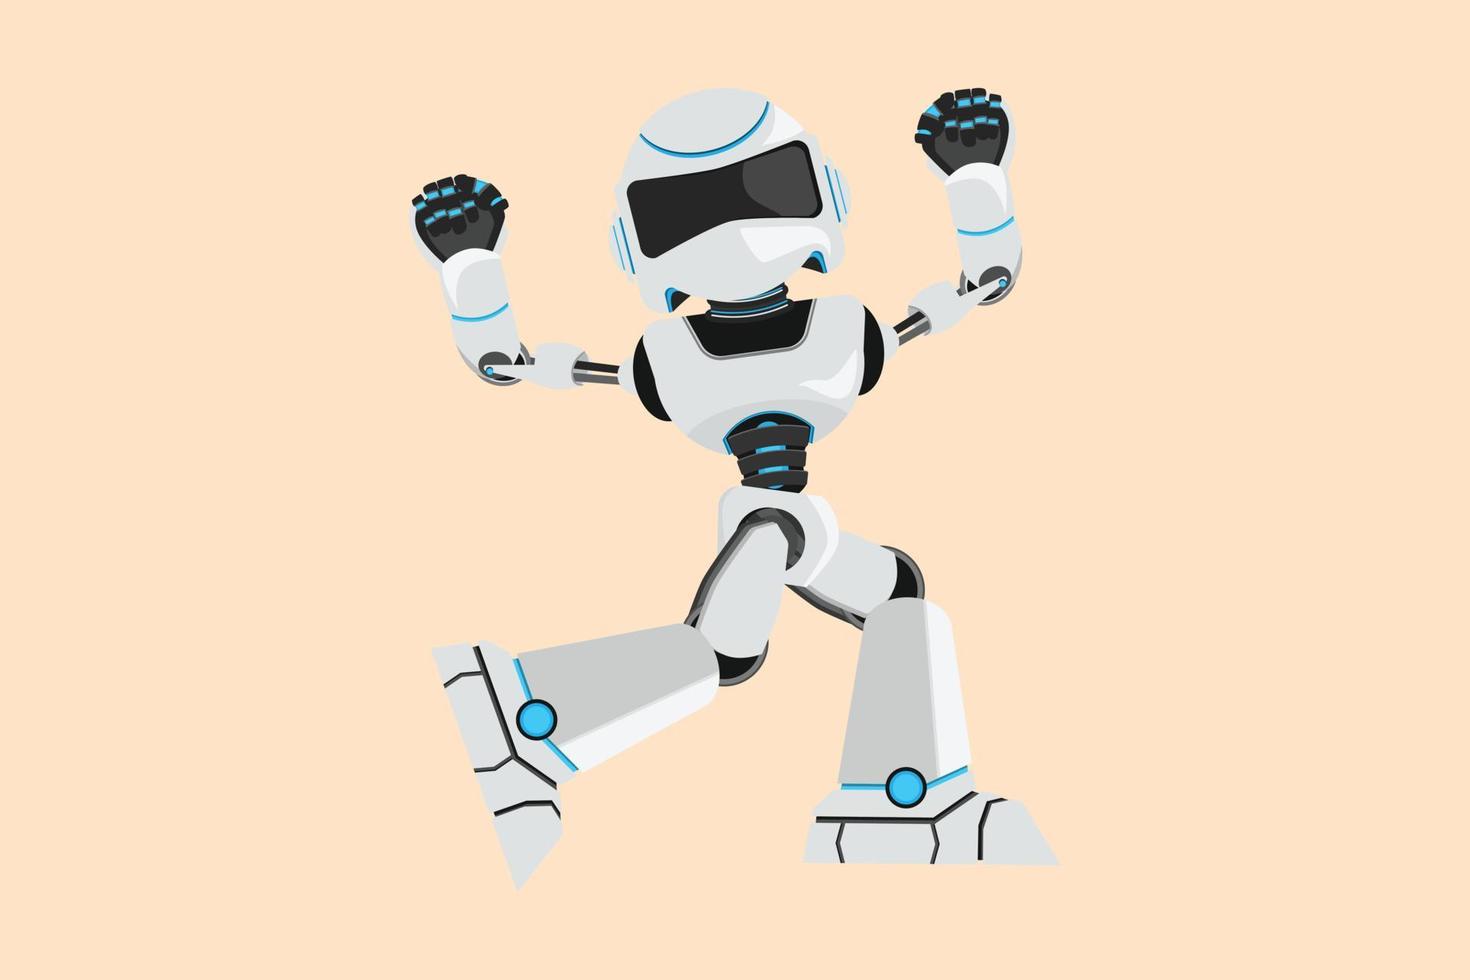 style de dessin animé plat d'affaires dessinant un robot heureux debout avec ses mains de poing serrées. intelligence artificielle robotique moderne. industrie de la technologie électronique. illustration vectorielle de conception graphique vecteur